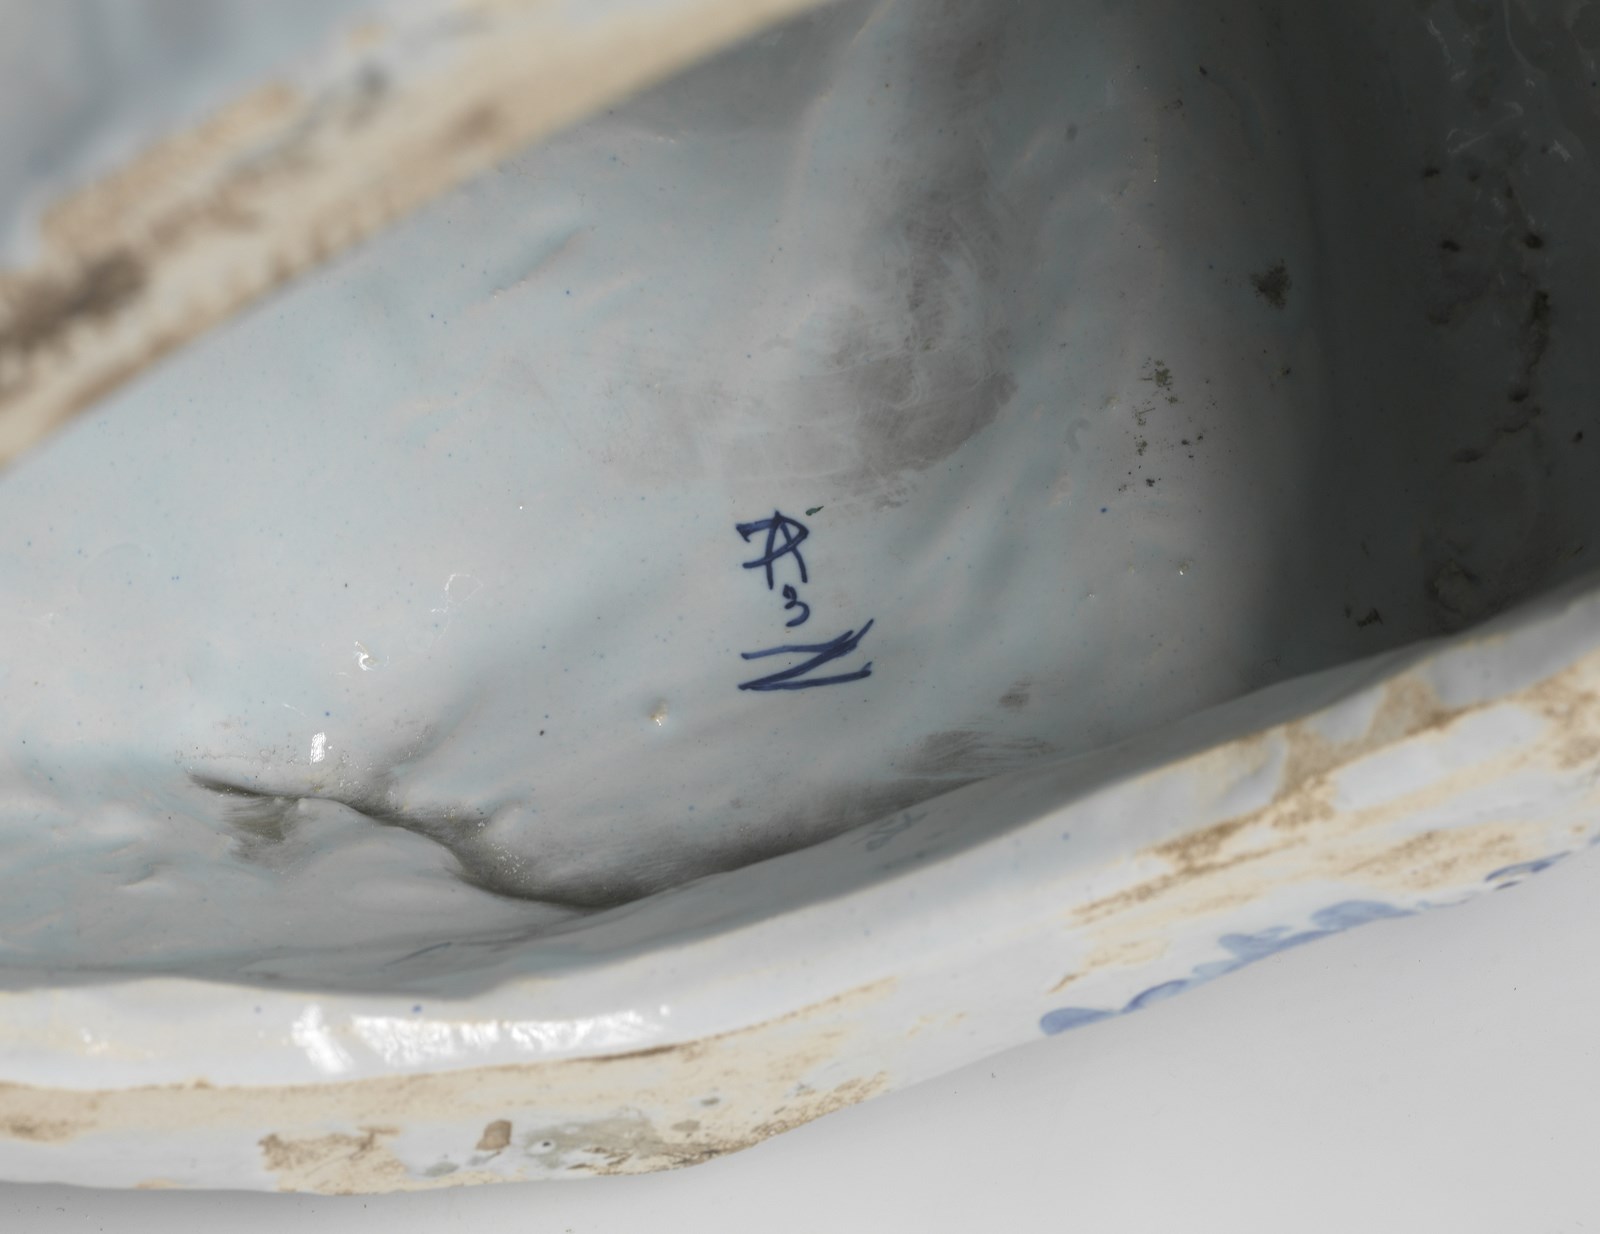 MANIFATTURA DI DELFT DEL XVIII SECOLO Rare smiling Magot statuette in blue white porcelain. - Image 4 of 4